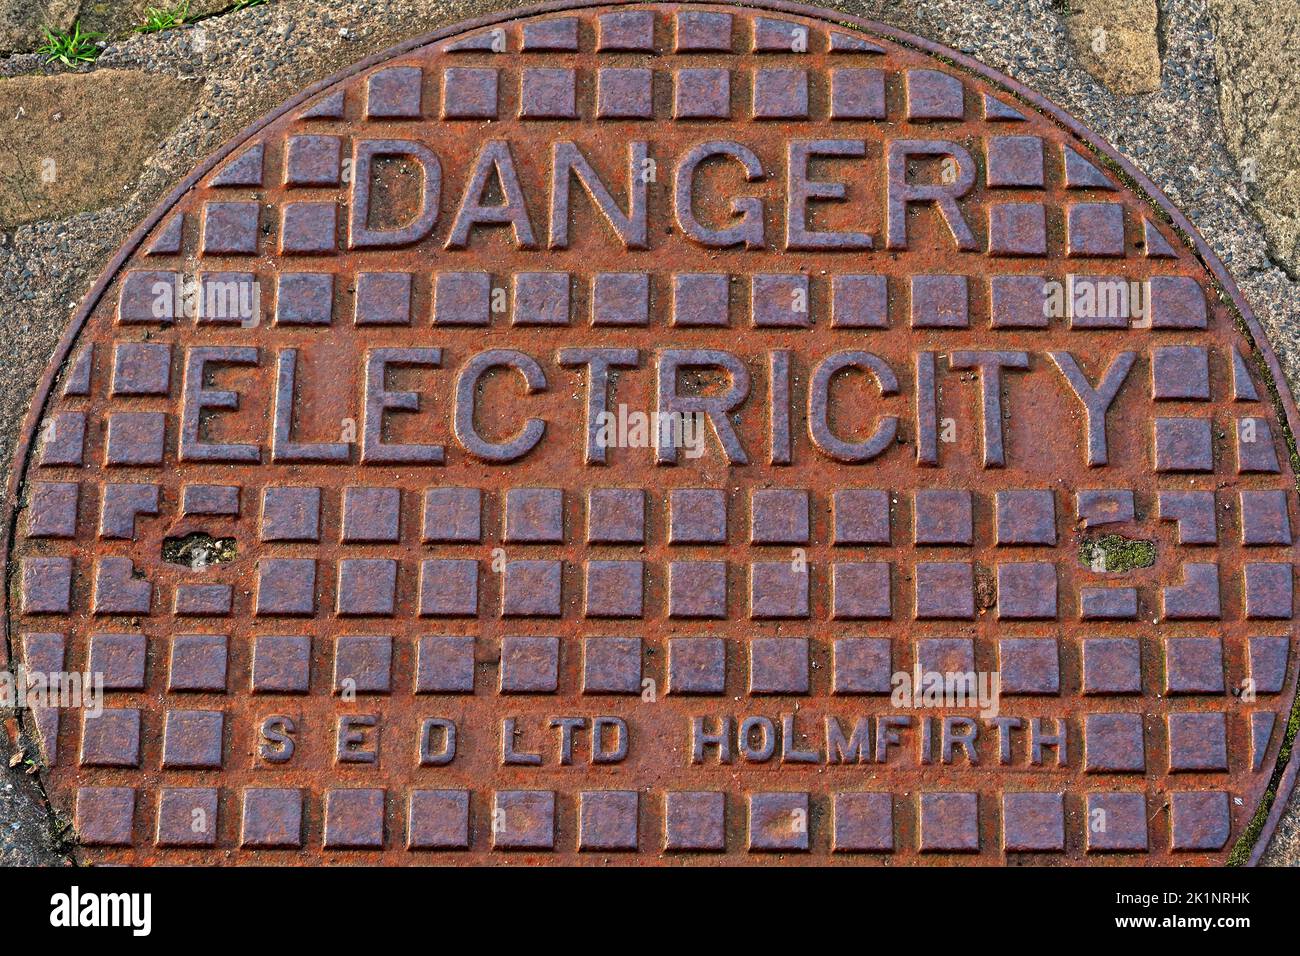 Réseau de fer, danger Electricité, SED ltd , Holmfirth, Yorkshire, West Yorkshire, Angleterre, Royaume-Uni Banque D'Images